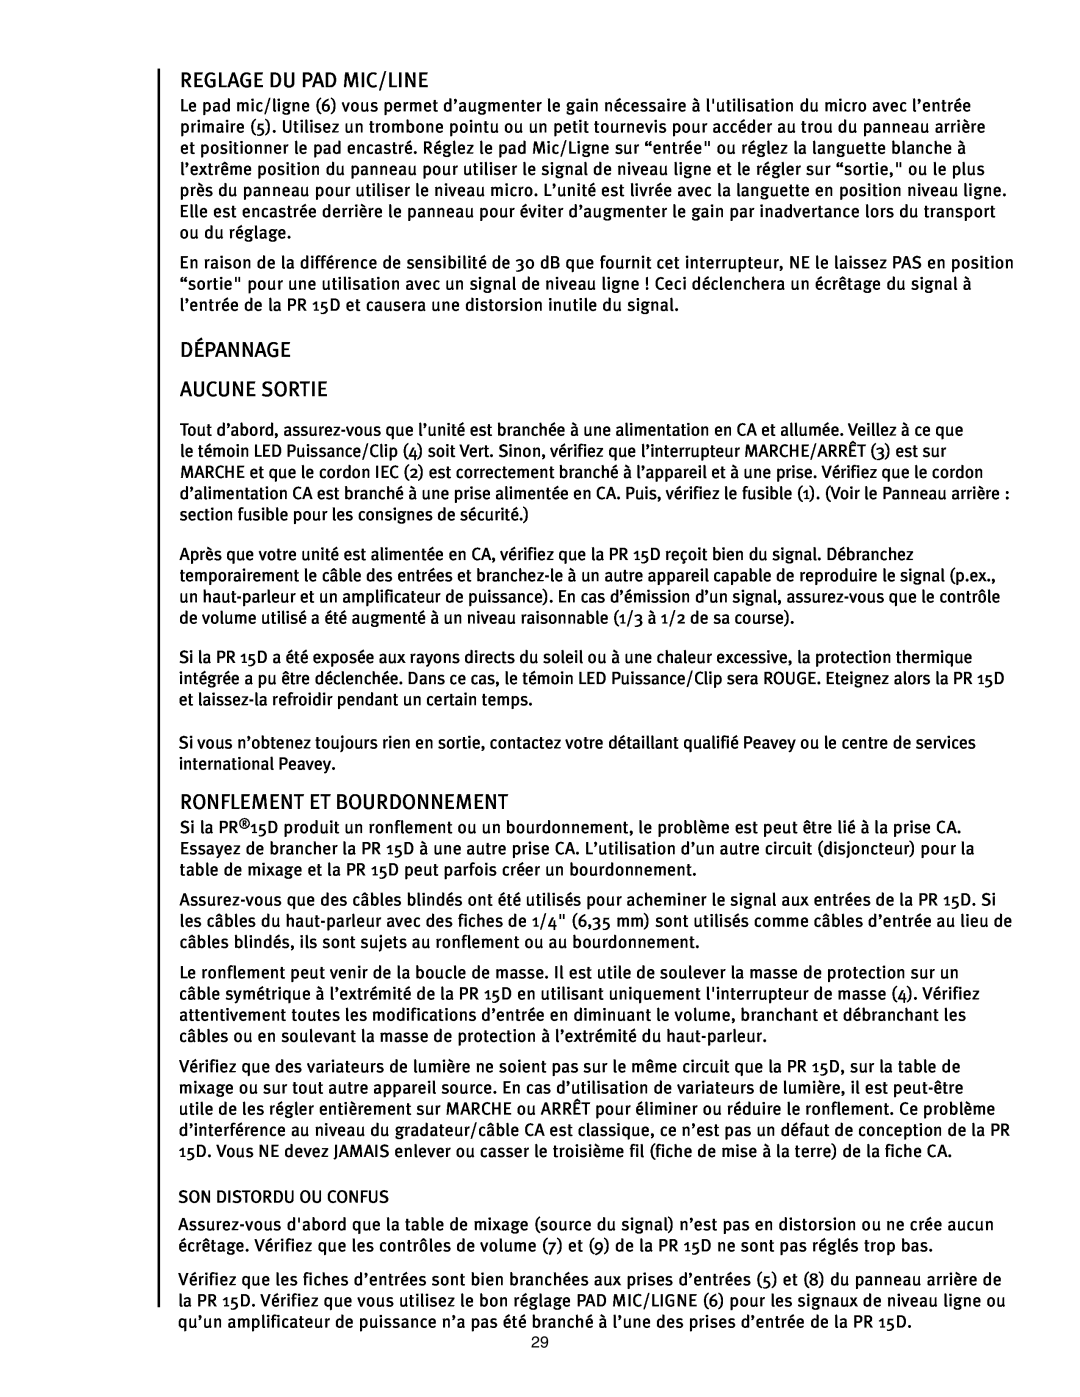 Peavey PR 15 D manual Reglage Du Pad Mic/Line, Dépannage Aucune Sortie, Ronflement Et Bourdonnement 